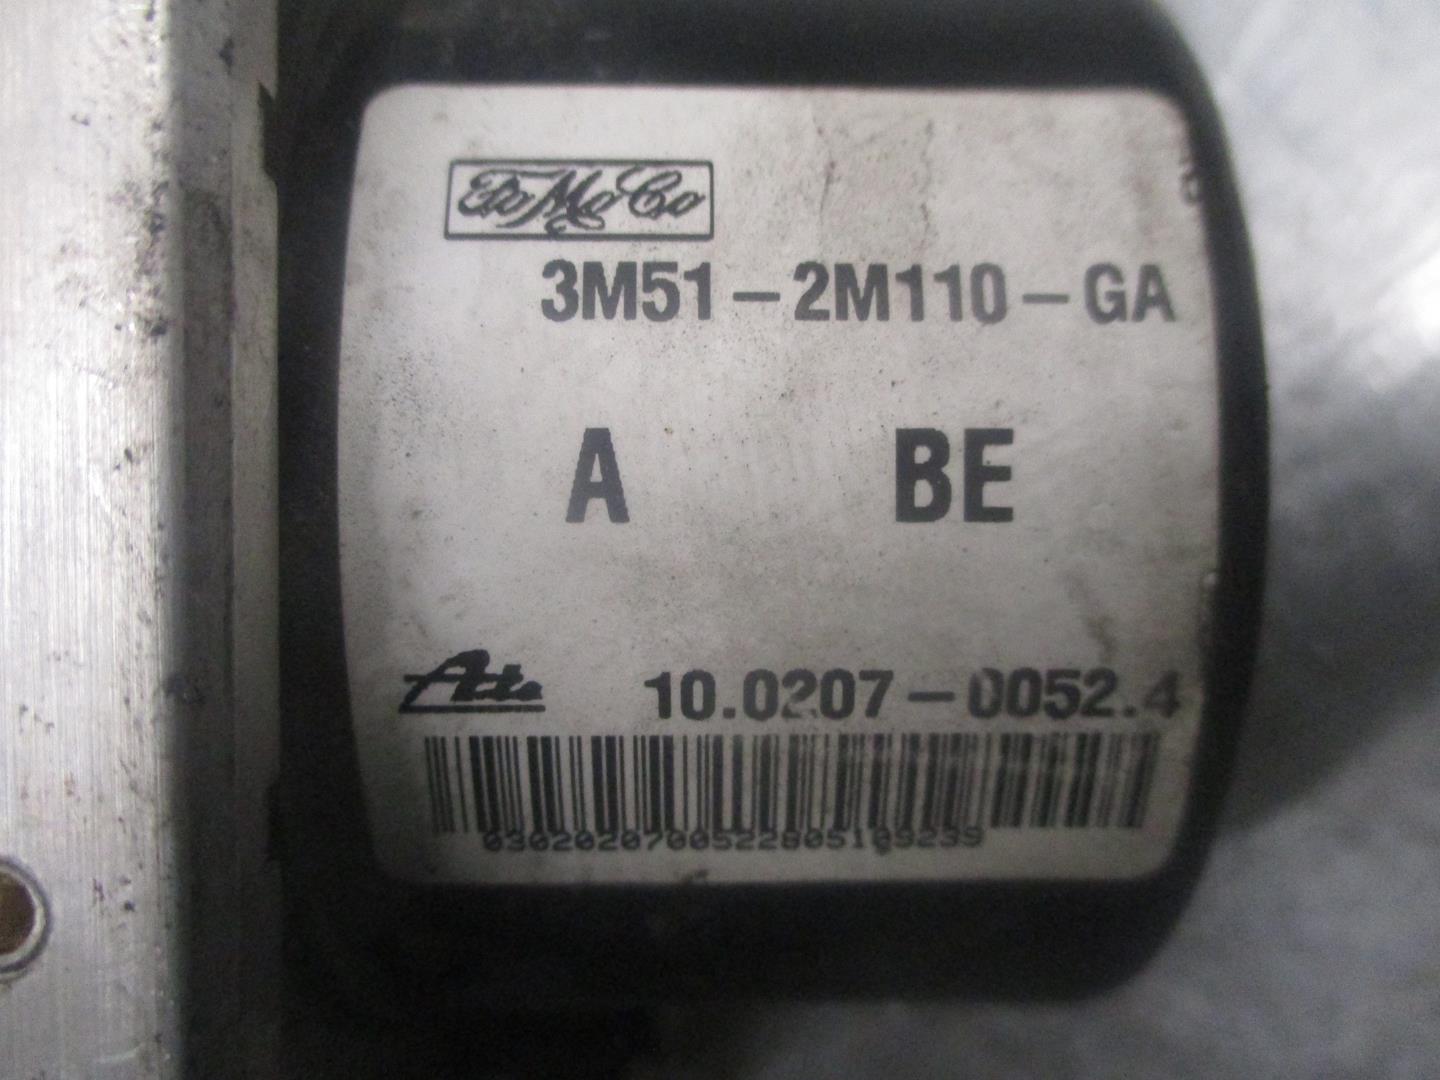 MAZDA 3 BK (2003-2009) ABS blokas 3M512M110GA, 100207000524, ATE 19770568